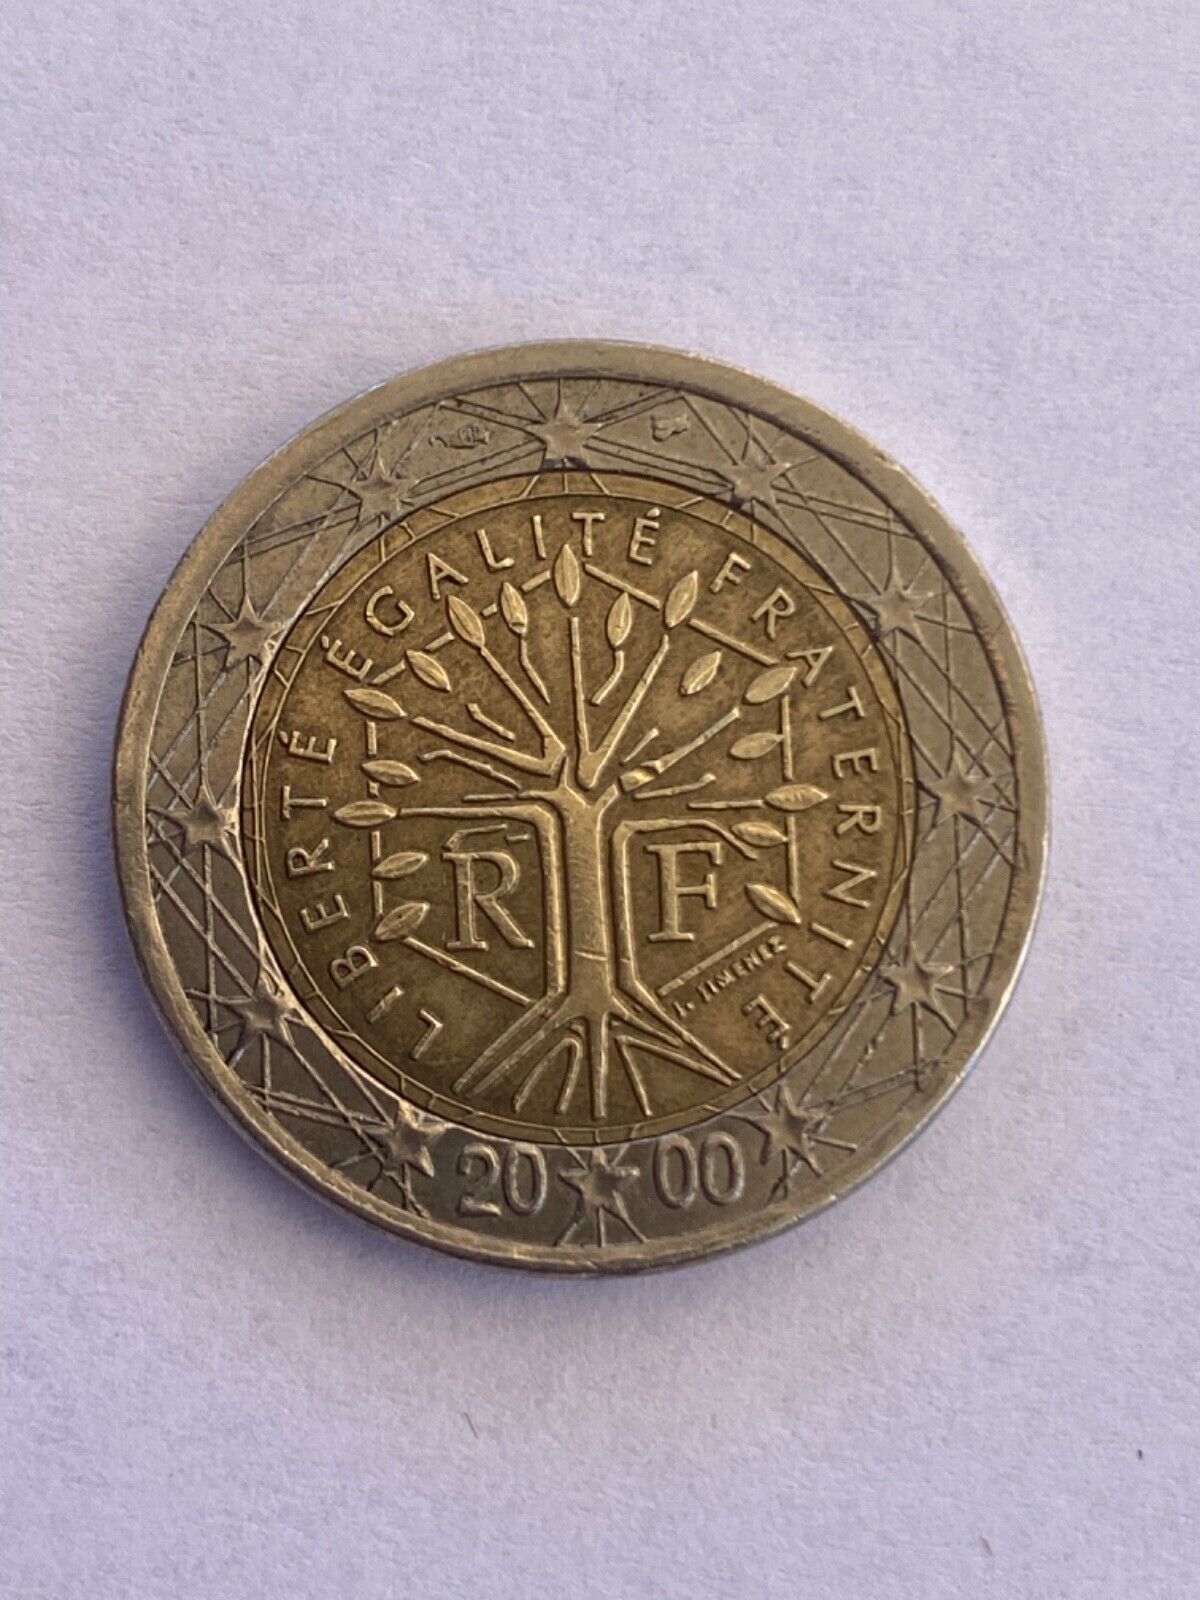 2 euro r f 2000